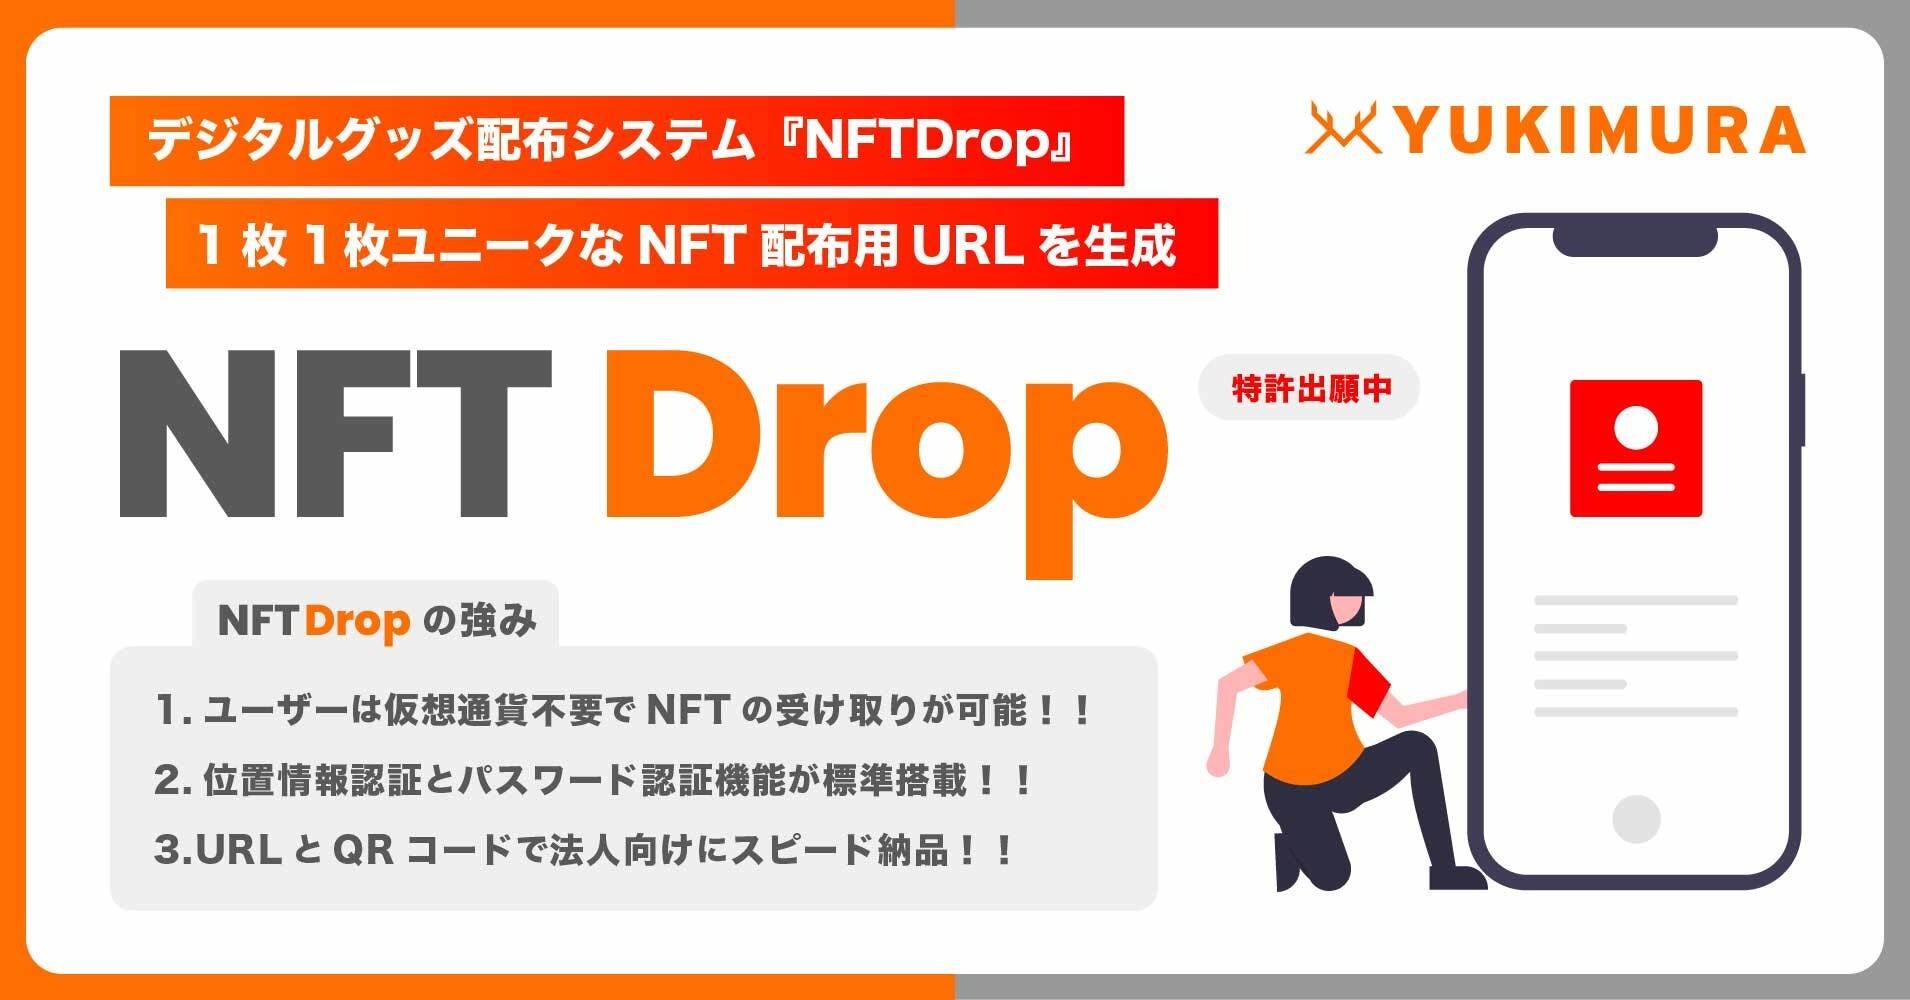 【メタバース×NFT】NINJAメタバライブのマスコットキャラクター「めたばっち」が、「NFTガチャ」としてEkimise浅草に展示！